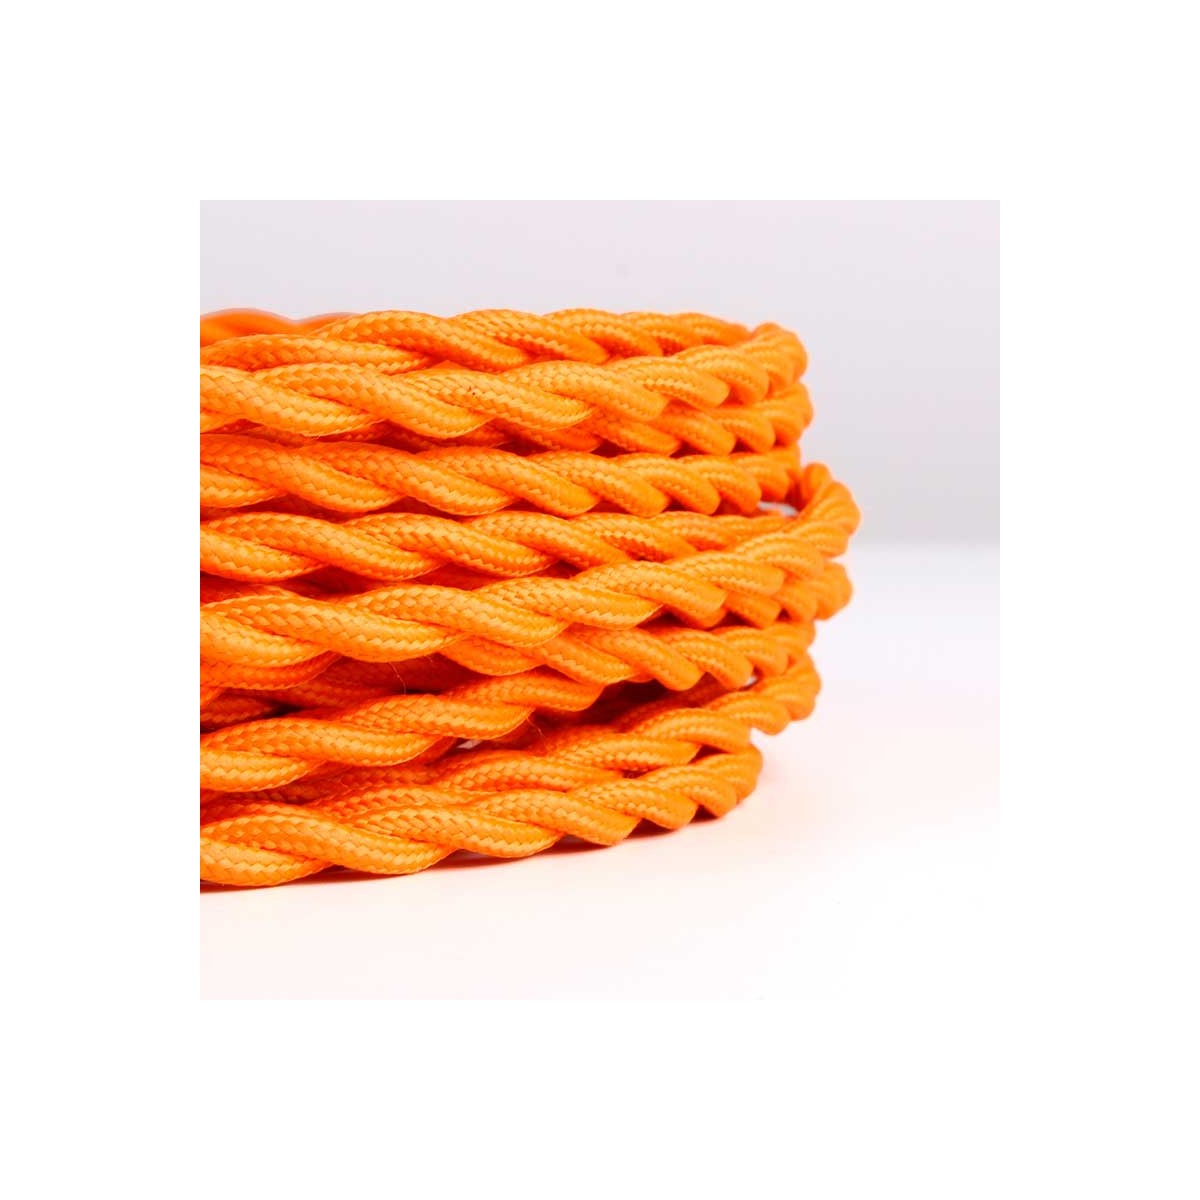 Câble tressé recouvert d'un tissu à effet soie de couleur orange